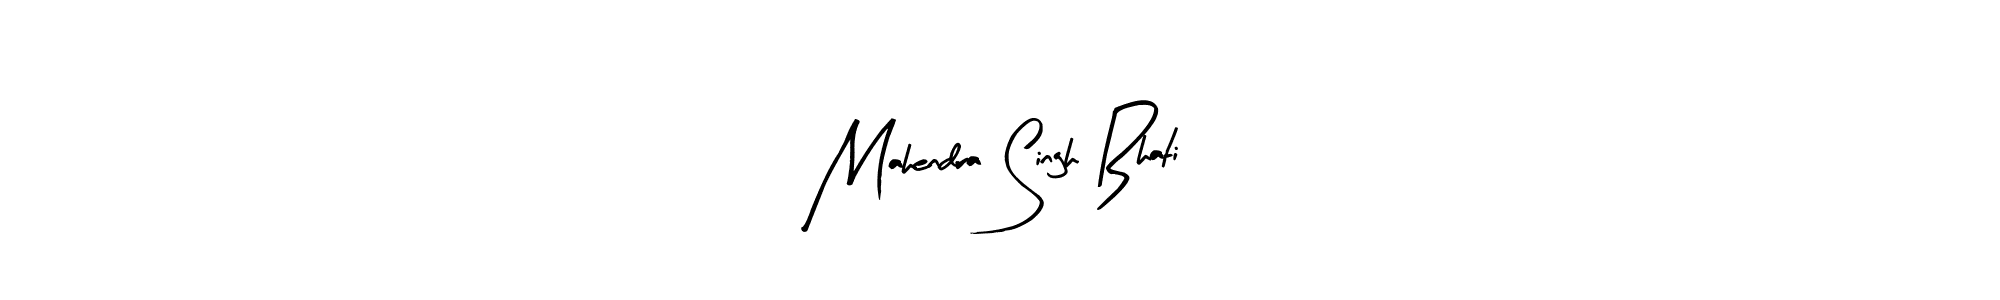 How to Draw Mahendra Singh Bhati signature style? Arty Signature is a latest design signature styles for name Mahendra Singh Bhati. Mahendra Singh Bhati signature style 8 images and pictures png